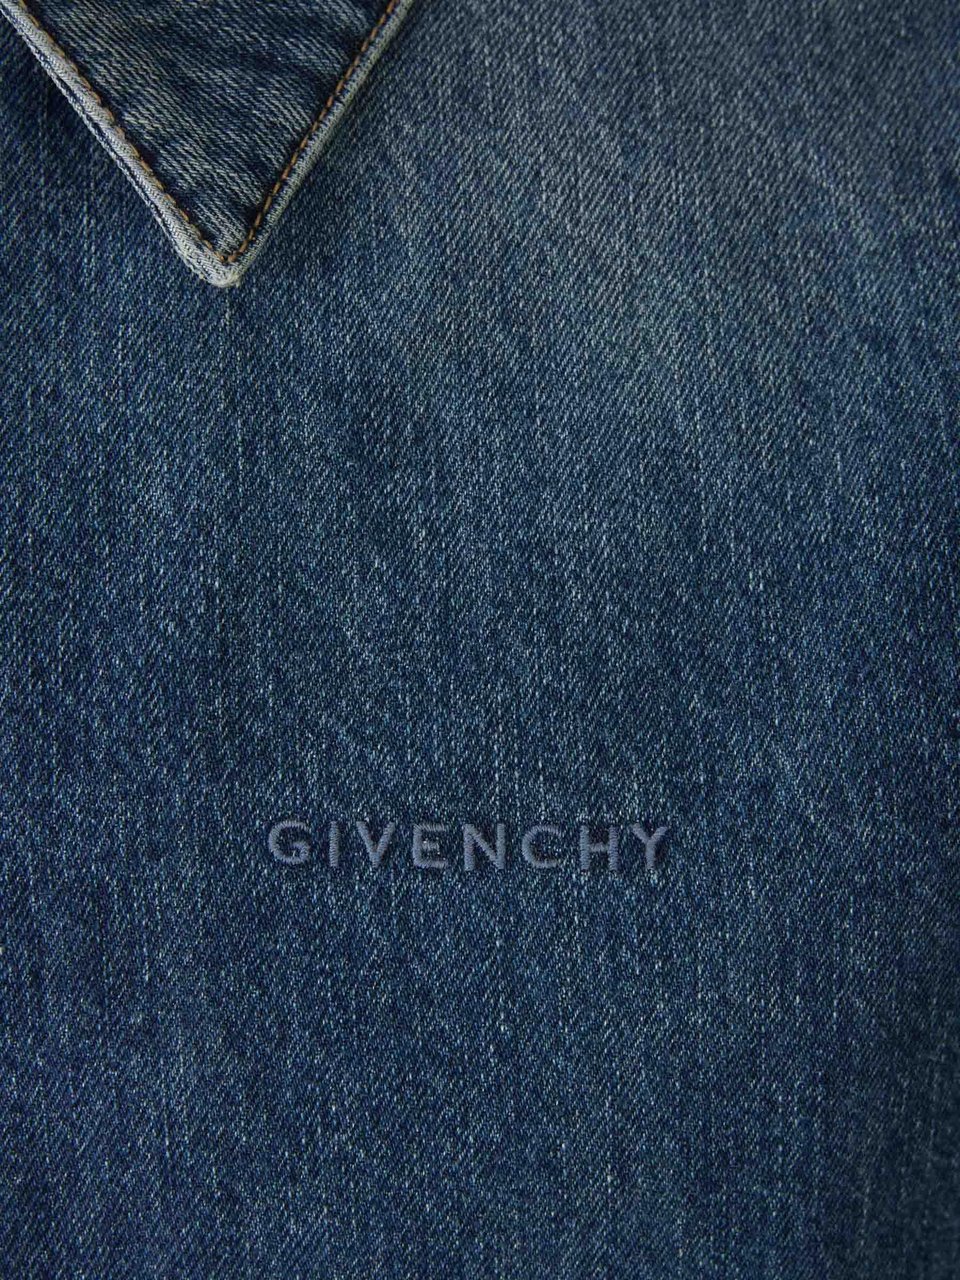 Givenchy Cotton Denim Vest Divers